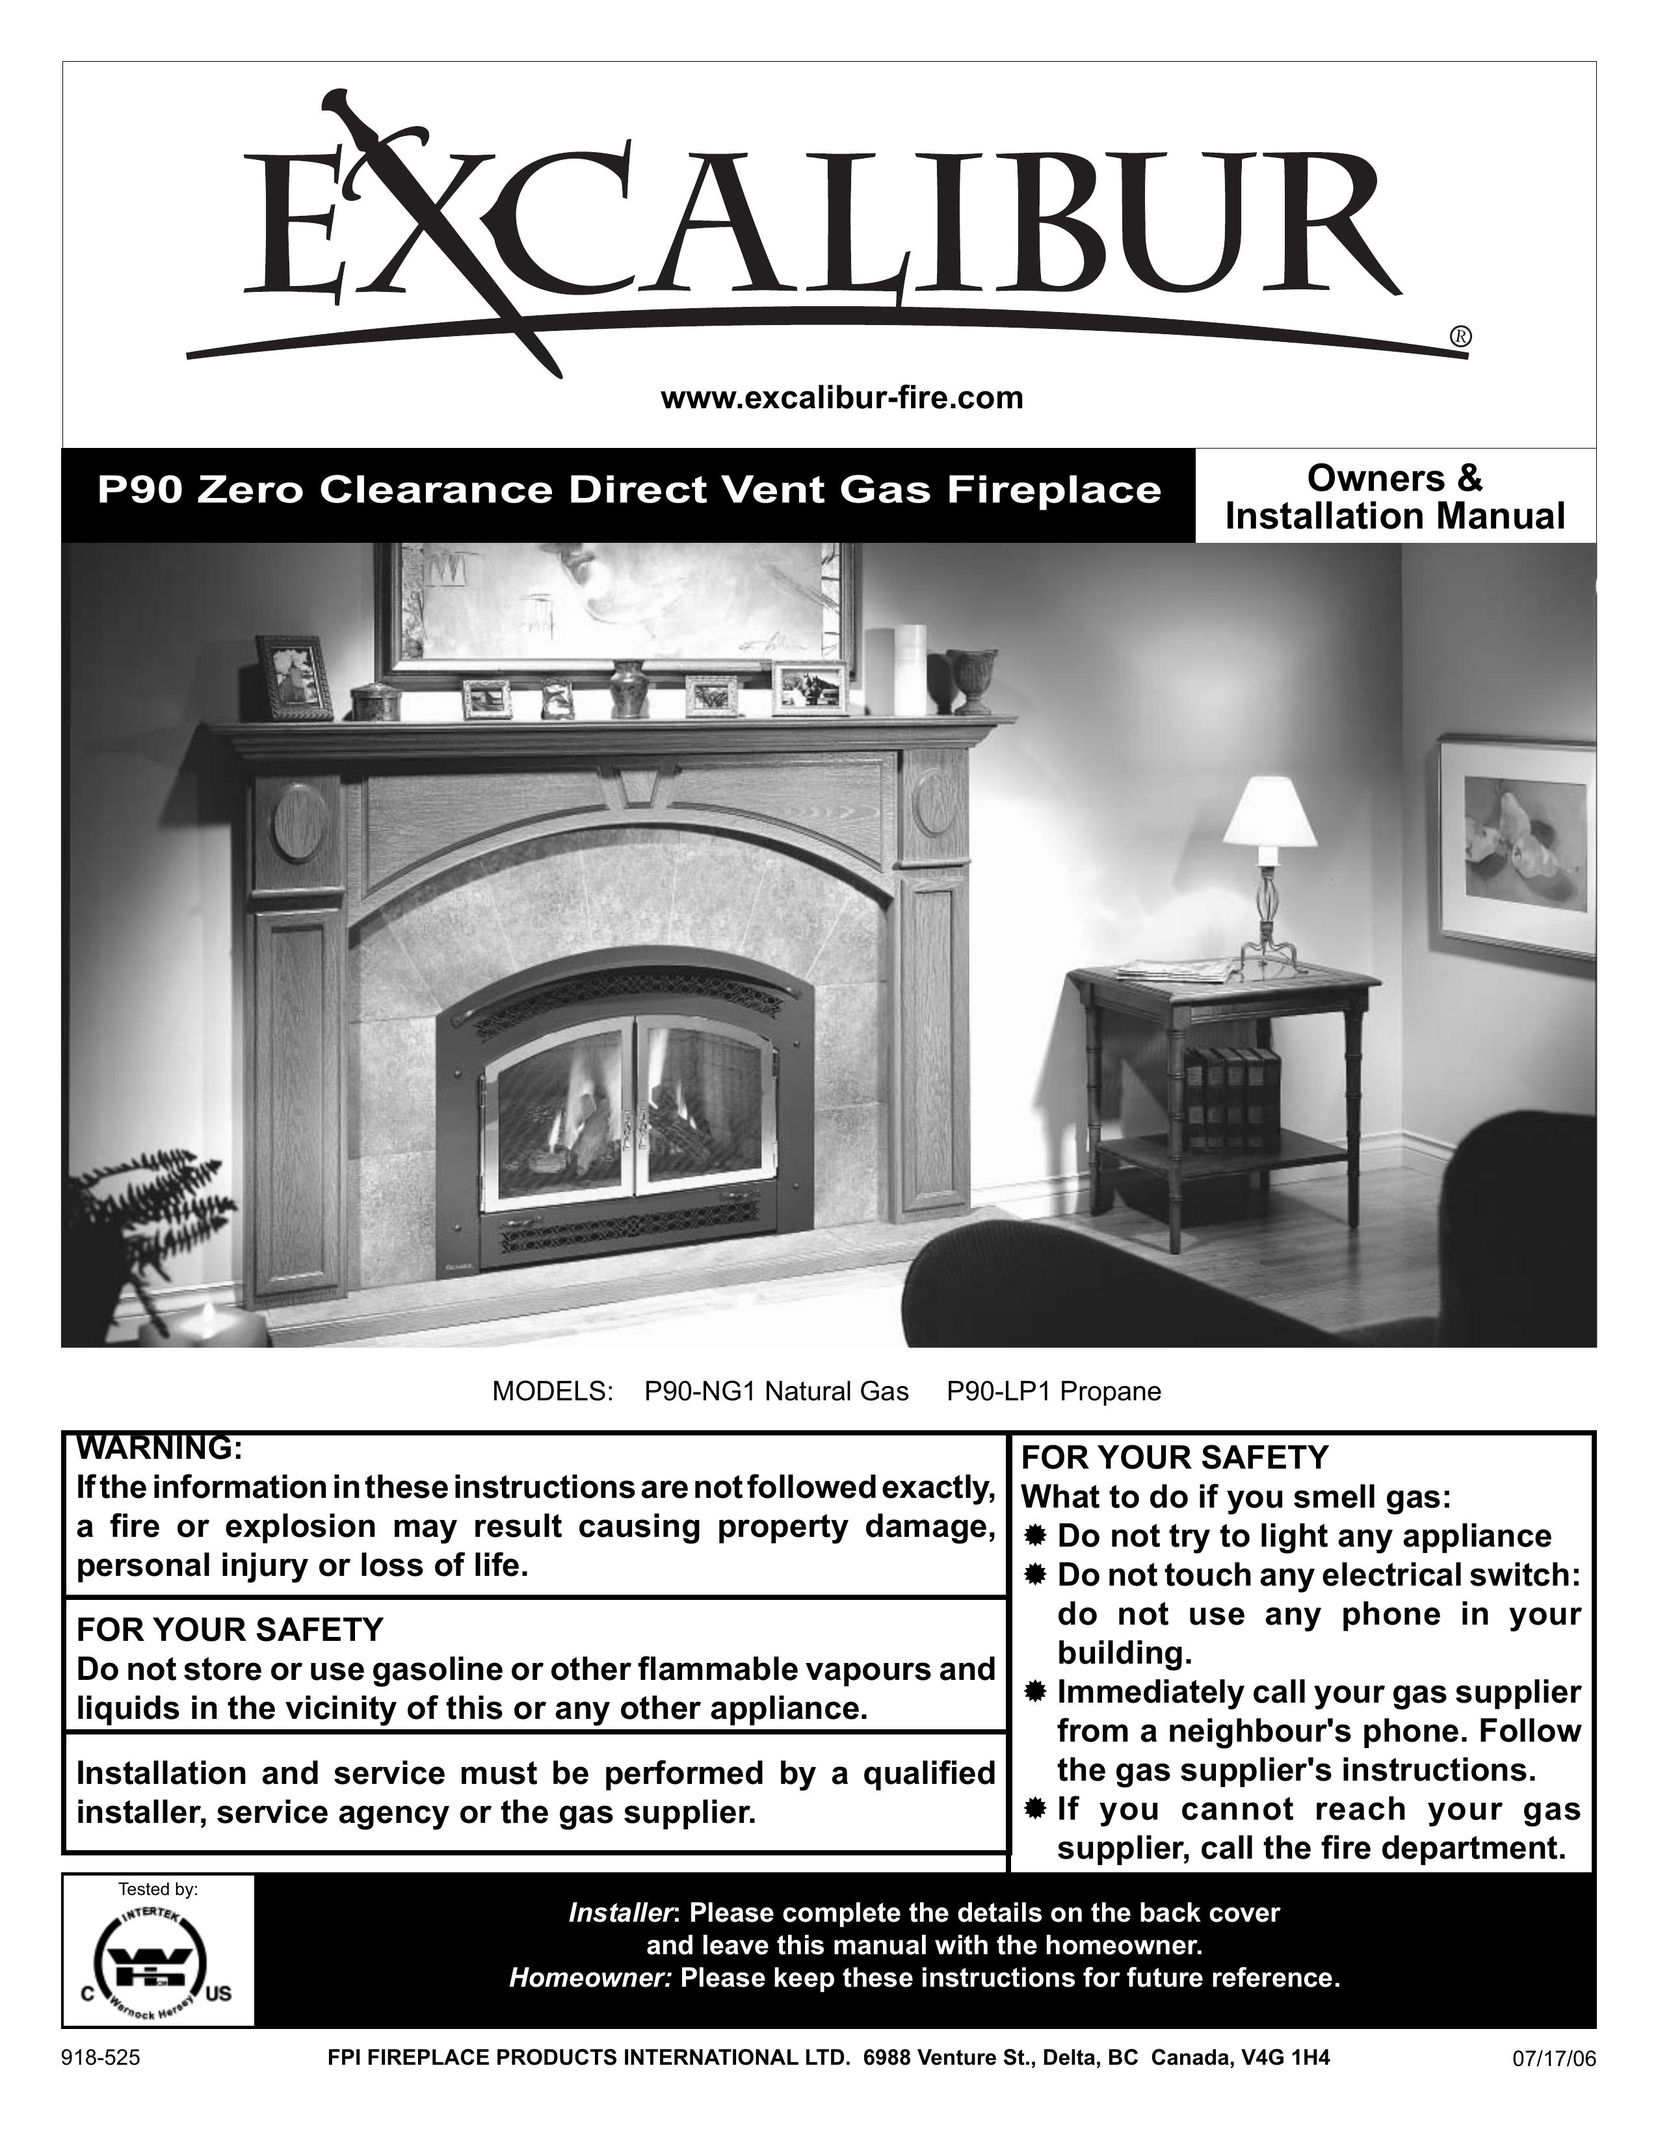 CarAlarms.com P90-NG1 Indoor Fireplace User Manual